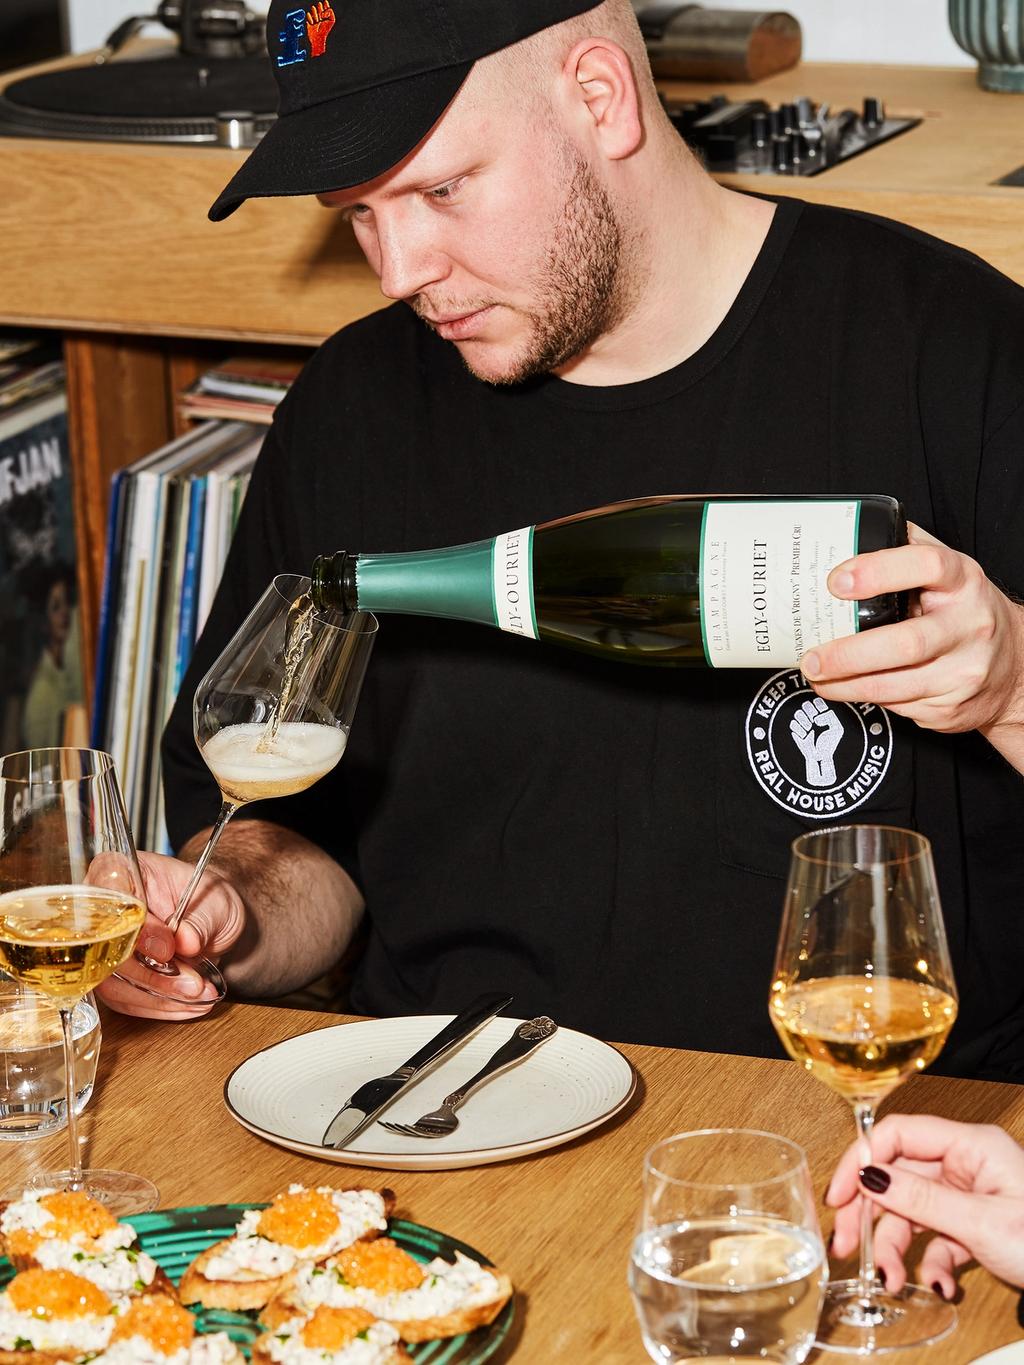 Champagne slår aldri feil. Fredrik trekker fram en favoritt på 100% pinot meunier.